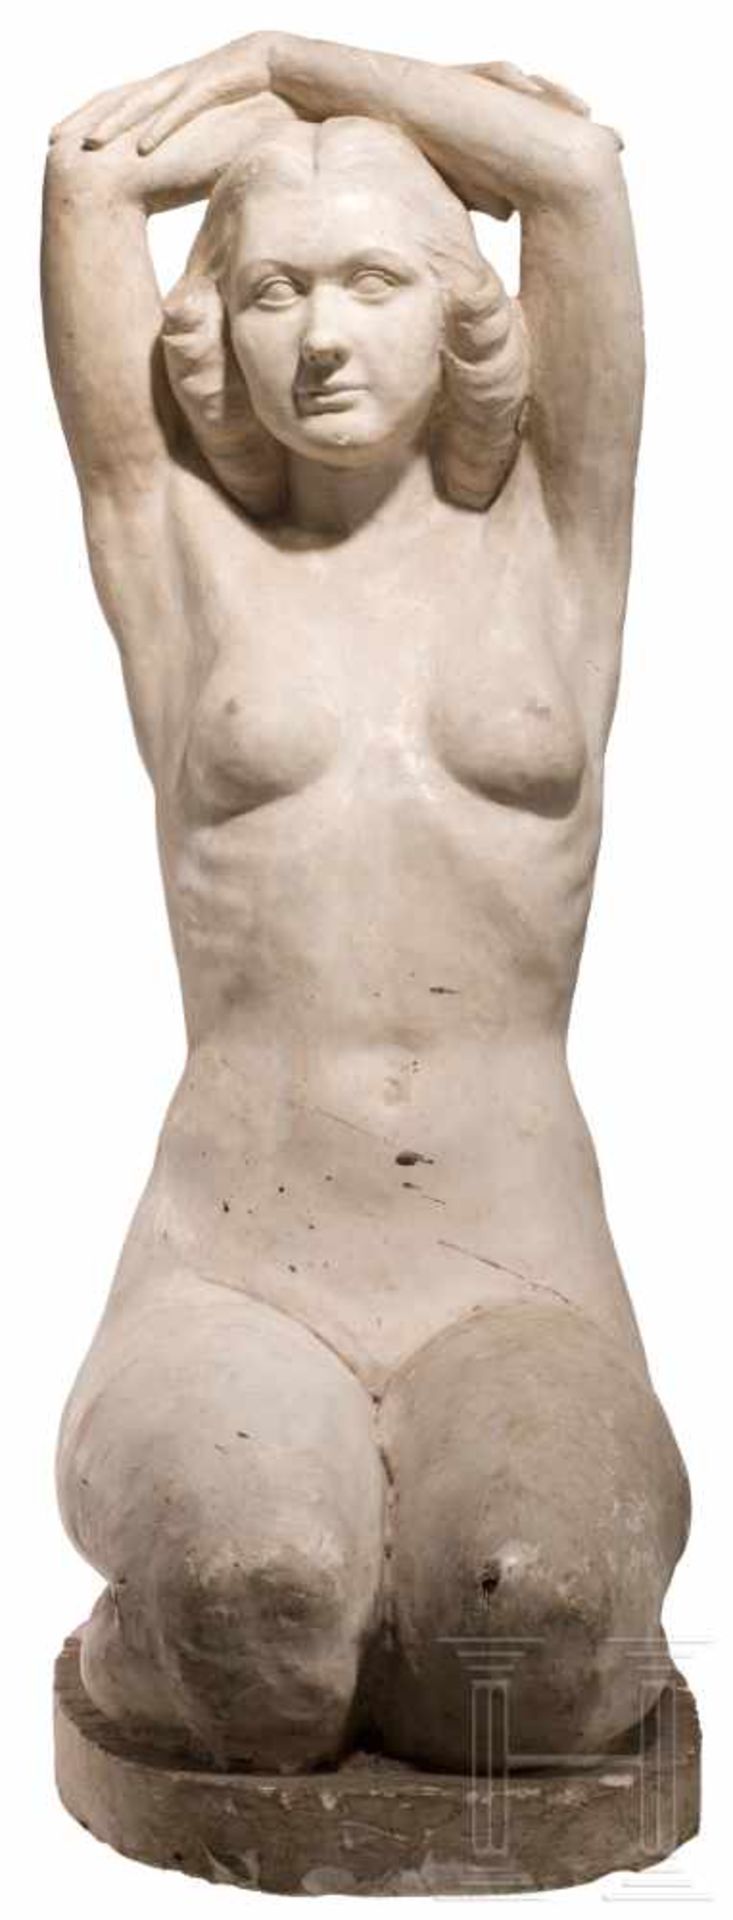 Arno Breker (1900-91) - lebensgroße Plastik nach "Die Kniende"Gipsmodell in Lebensgröße, nach - Bild 3 aus 4